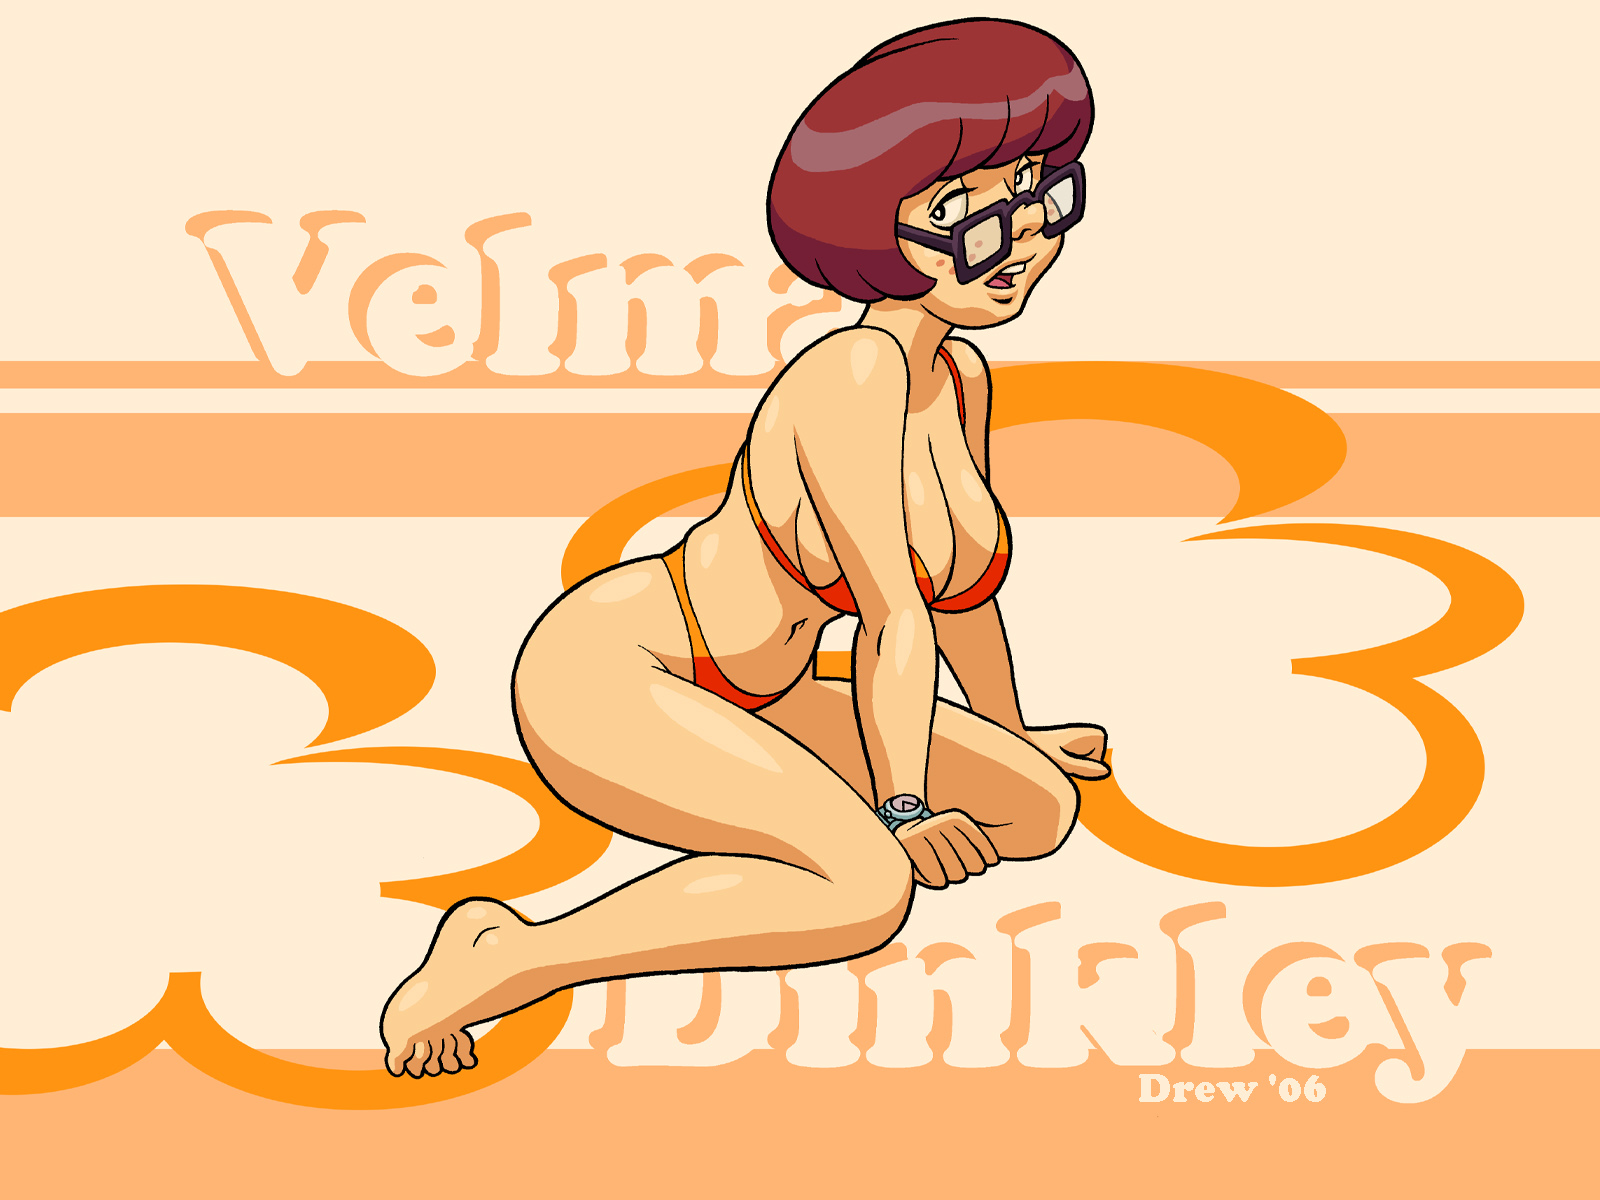 Drew Gardner - Velma